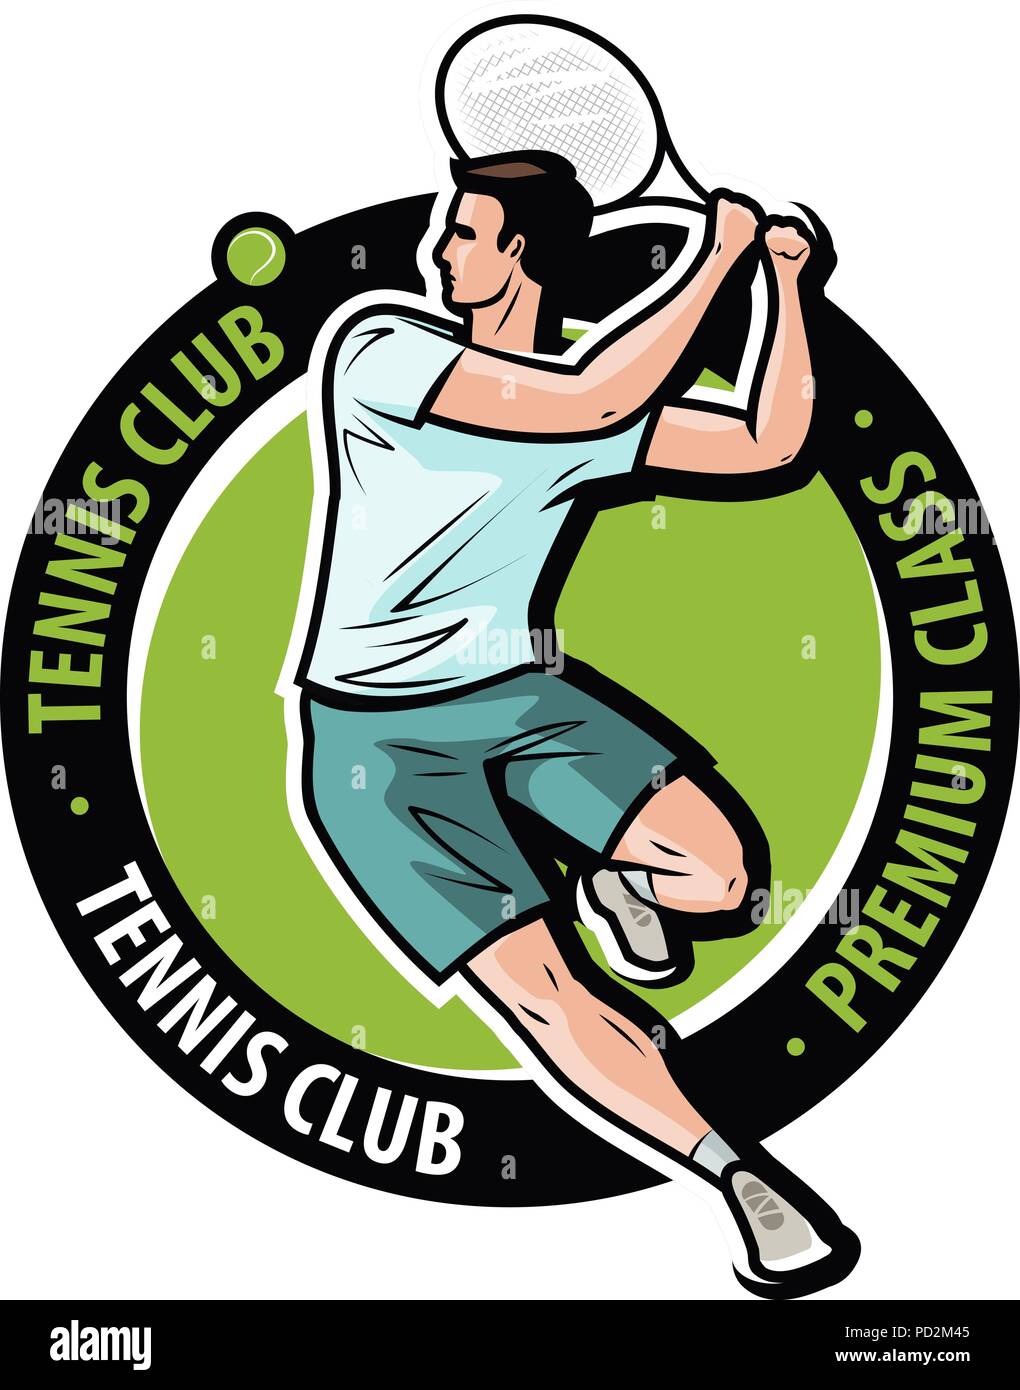 Tennis club logo o etichetta. Sport simbolo. Illustrazione Vettoriale Illustrazione Vettoriale